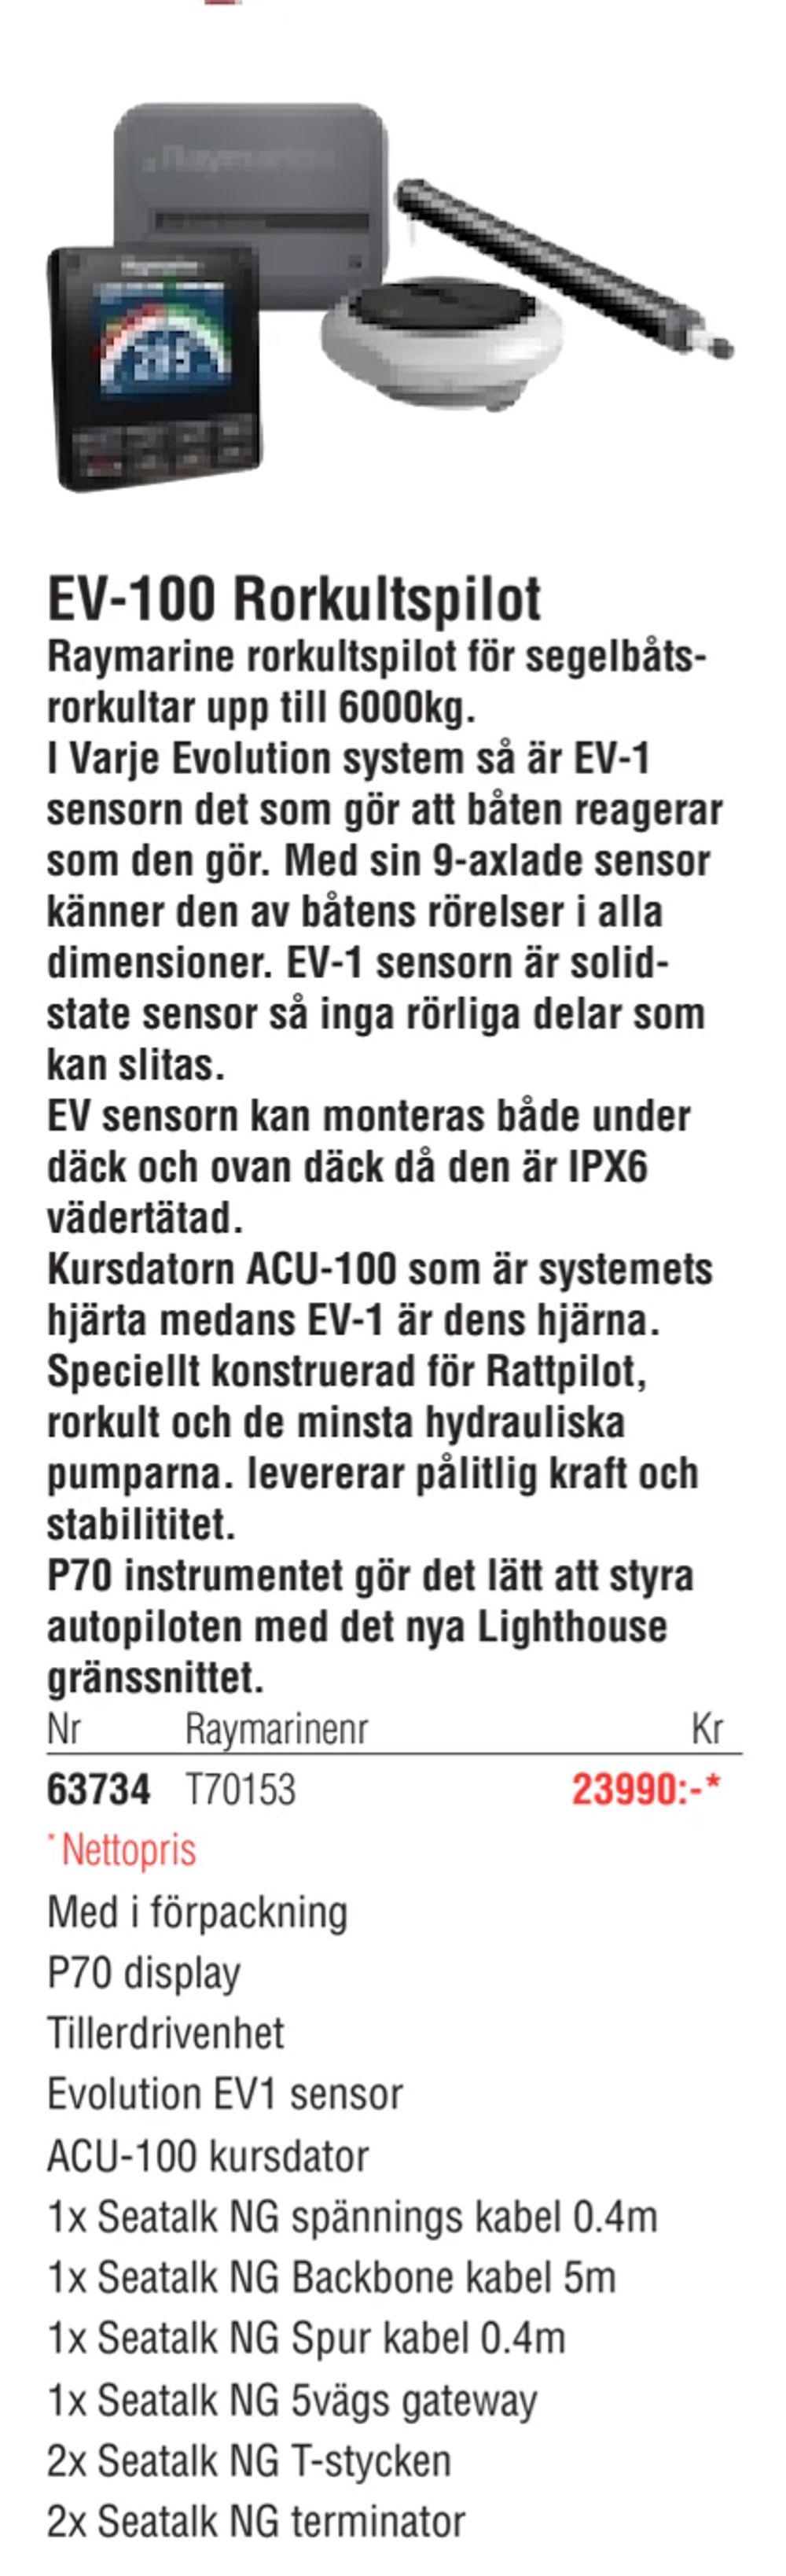 Erbjudanden på EV-100 Rorkultspilot från Erlandsons Brygga för 23 990 kr